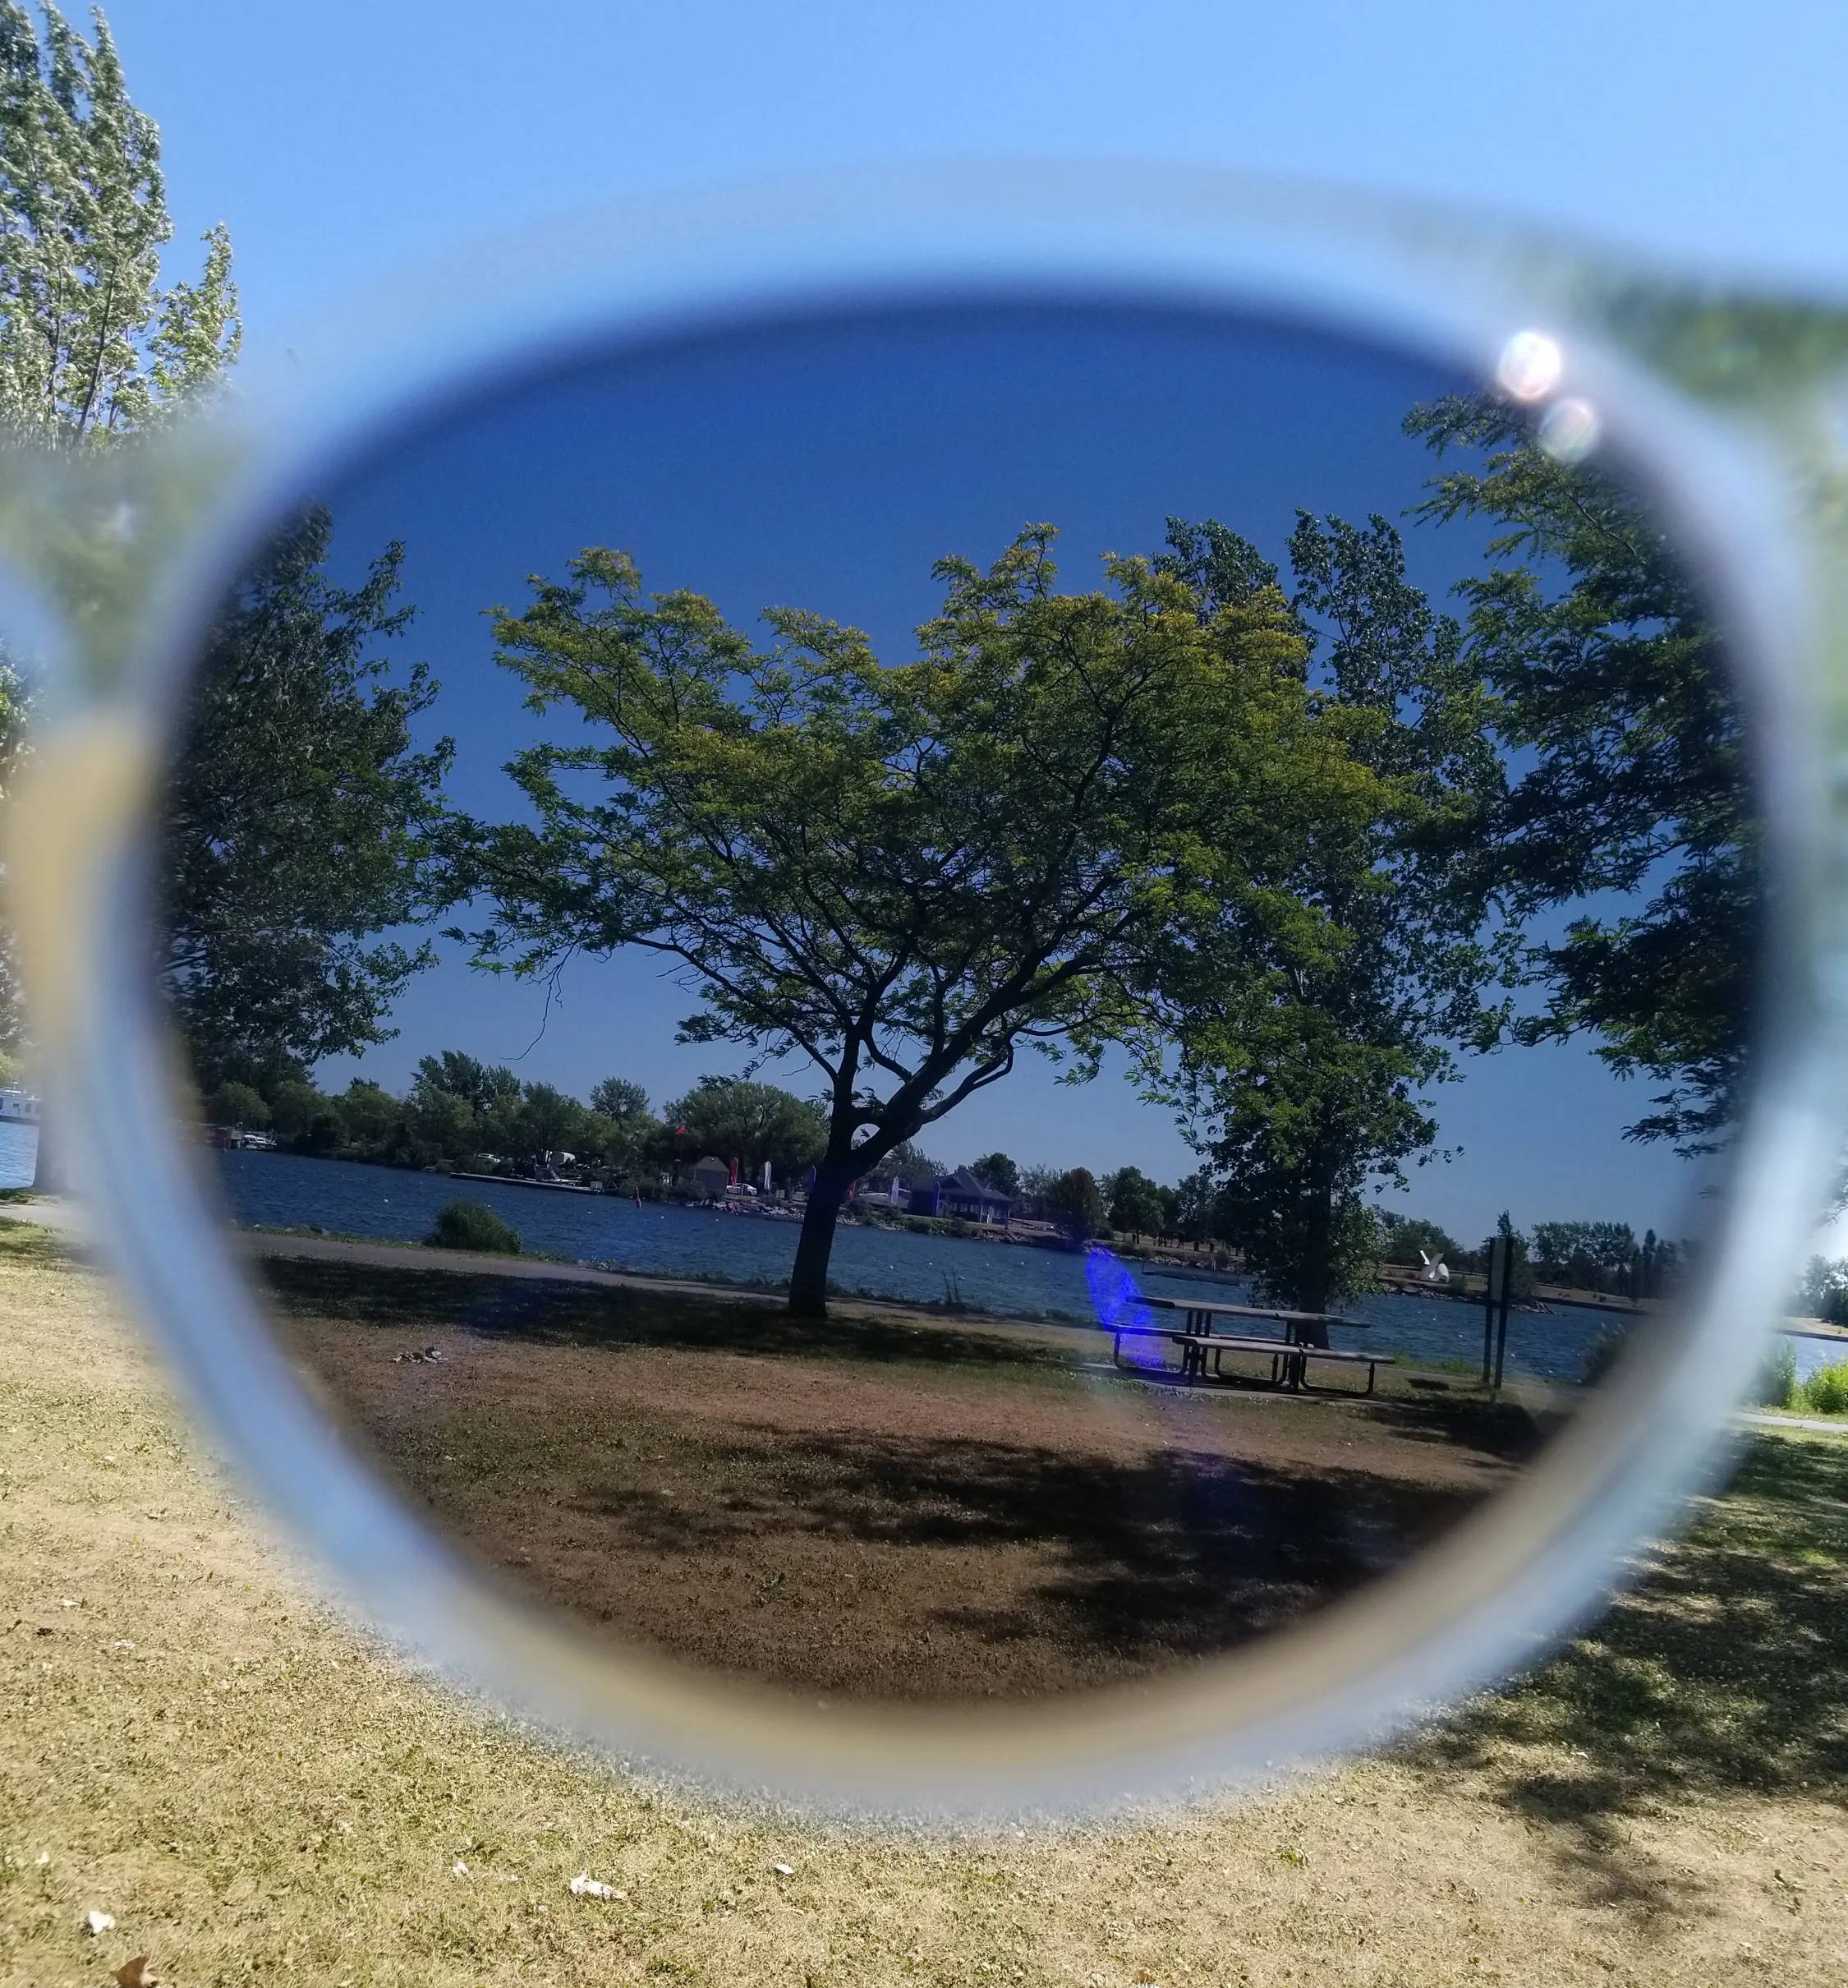 Paysage du lac à travers des verres de lunettes de soleil polarisées teintées